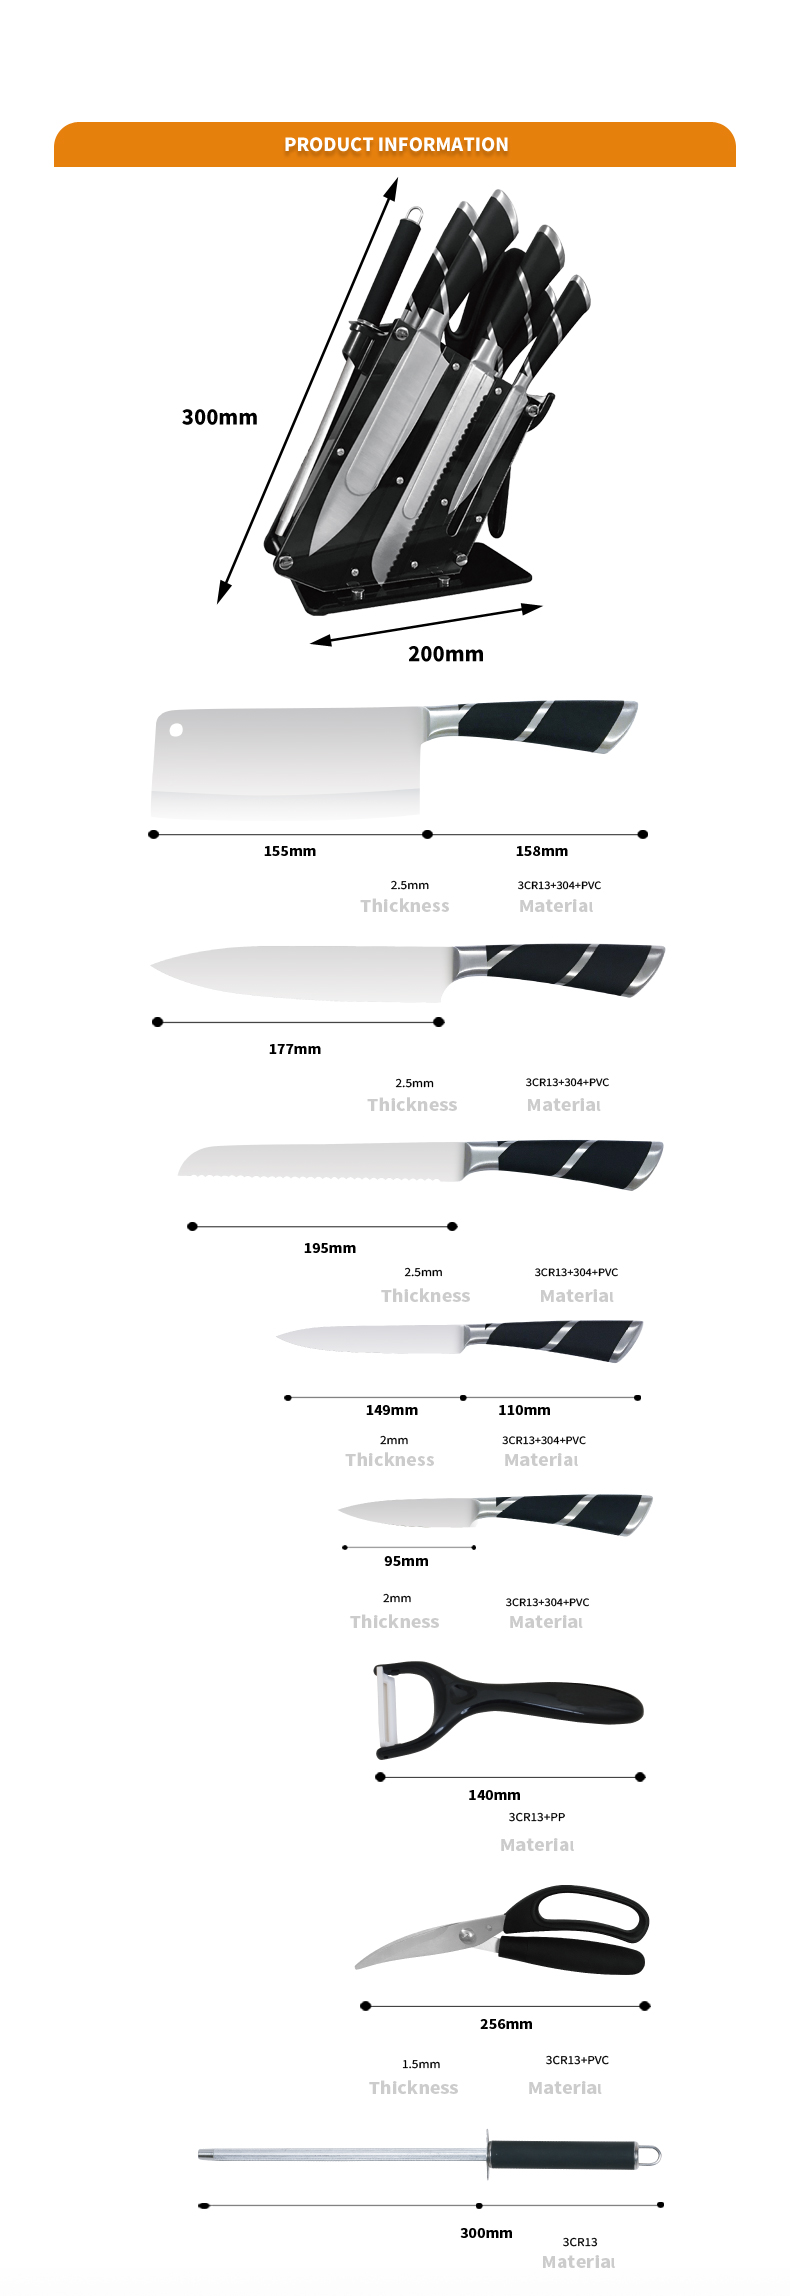 K142-नवीन शैली OEM 8pcs मल्टीफंक्शनल स्टेनलेस स्टील किचनवेअर सेट-ZX | किचन चाकू, किचन टूल्स, सिलिकॉन केक मोल्ड, कटिंग बोर्ड, बेकिंग टूल सेट, शेफ चाकू, स्टीक नाइफ, स्लायसर चाकू, युटिलिटी चाकू, पॅरिंग चाकू, चाकू ब्लॉक, चाकू स्टँड, सॅंटोकू चाकू, टॉडलर चाकू, प्लॅस्टिक नाइफ, प्लास्टिक नाइफ चाकू,रंगीबेरंगी चाकू,स्टेनलेस स्टील चाकू,कॅन ओपनर,बॉटल ओपनर,चहा गाळणे,खवणी,अंडी बीटर,नायलॉन किचन टूल,सिलिकॉन किचन टूल,कुकी कटर,कुकिंग चाकू सेट,चाकू शार्पनर,पीलर,केक चाकू, चाकू, सिलिकॉन स्पॅट्युलर, सिलिकॉन चमचा, फूड टॉंग, बनावट चाकू, स्वयंपाकघरातील कात्री, केक बेकिंग चाकू, मुलांचे स्वयंपाक चाकू, कोरीव चाकू